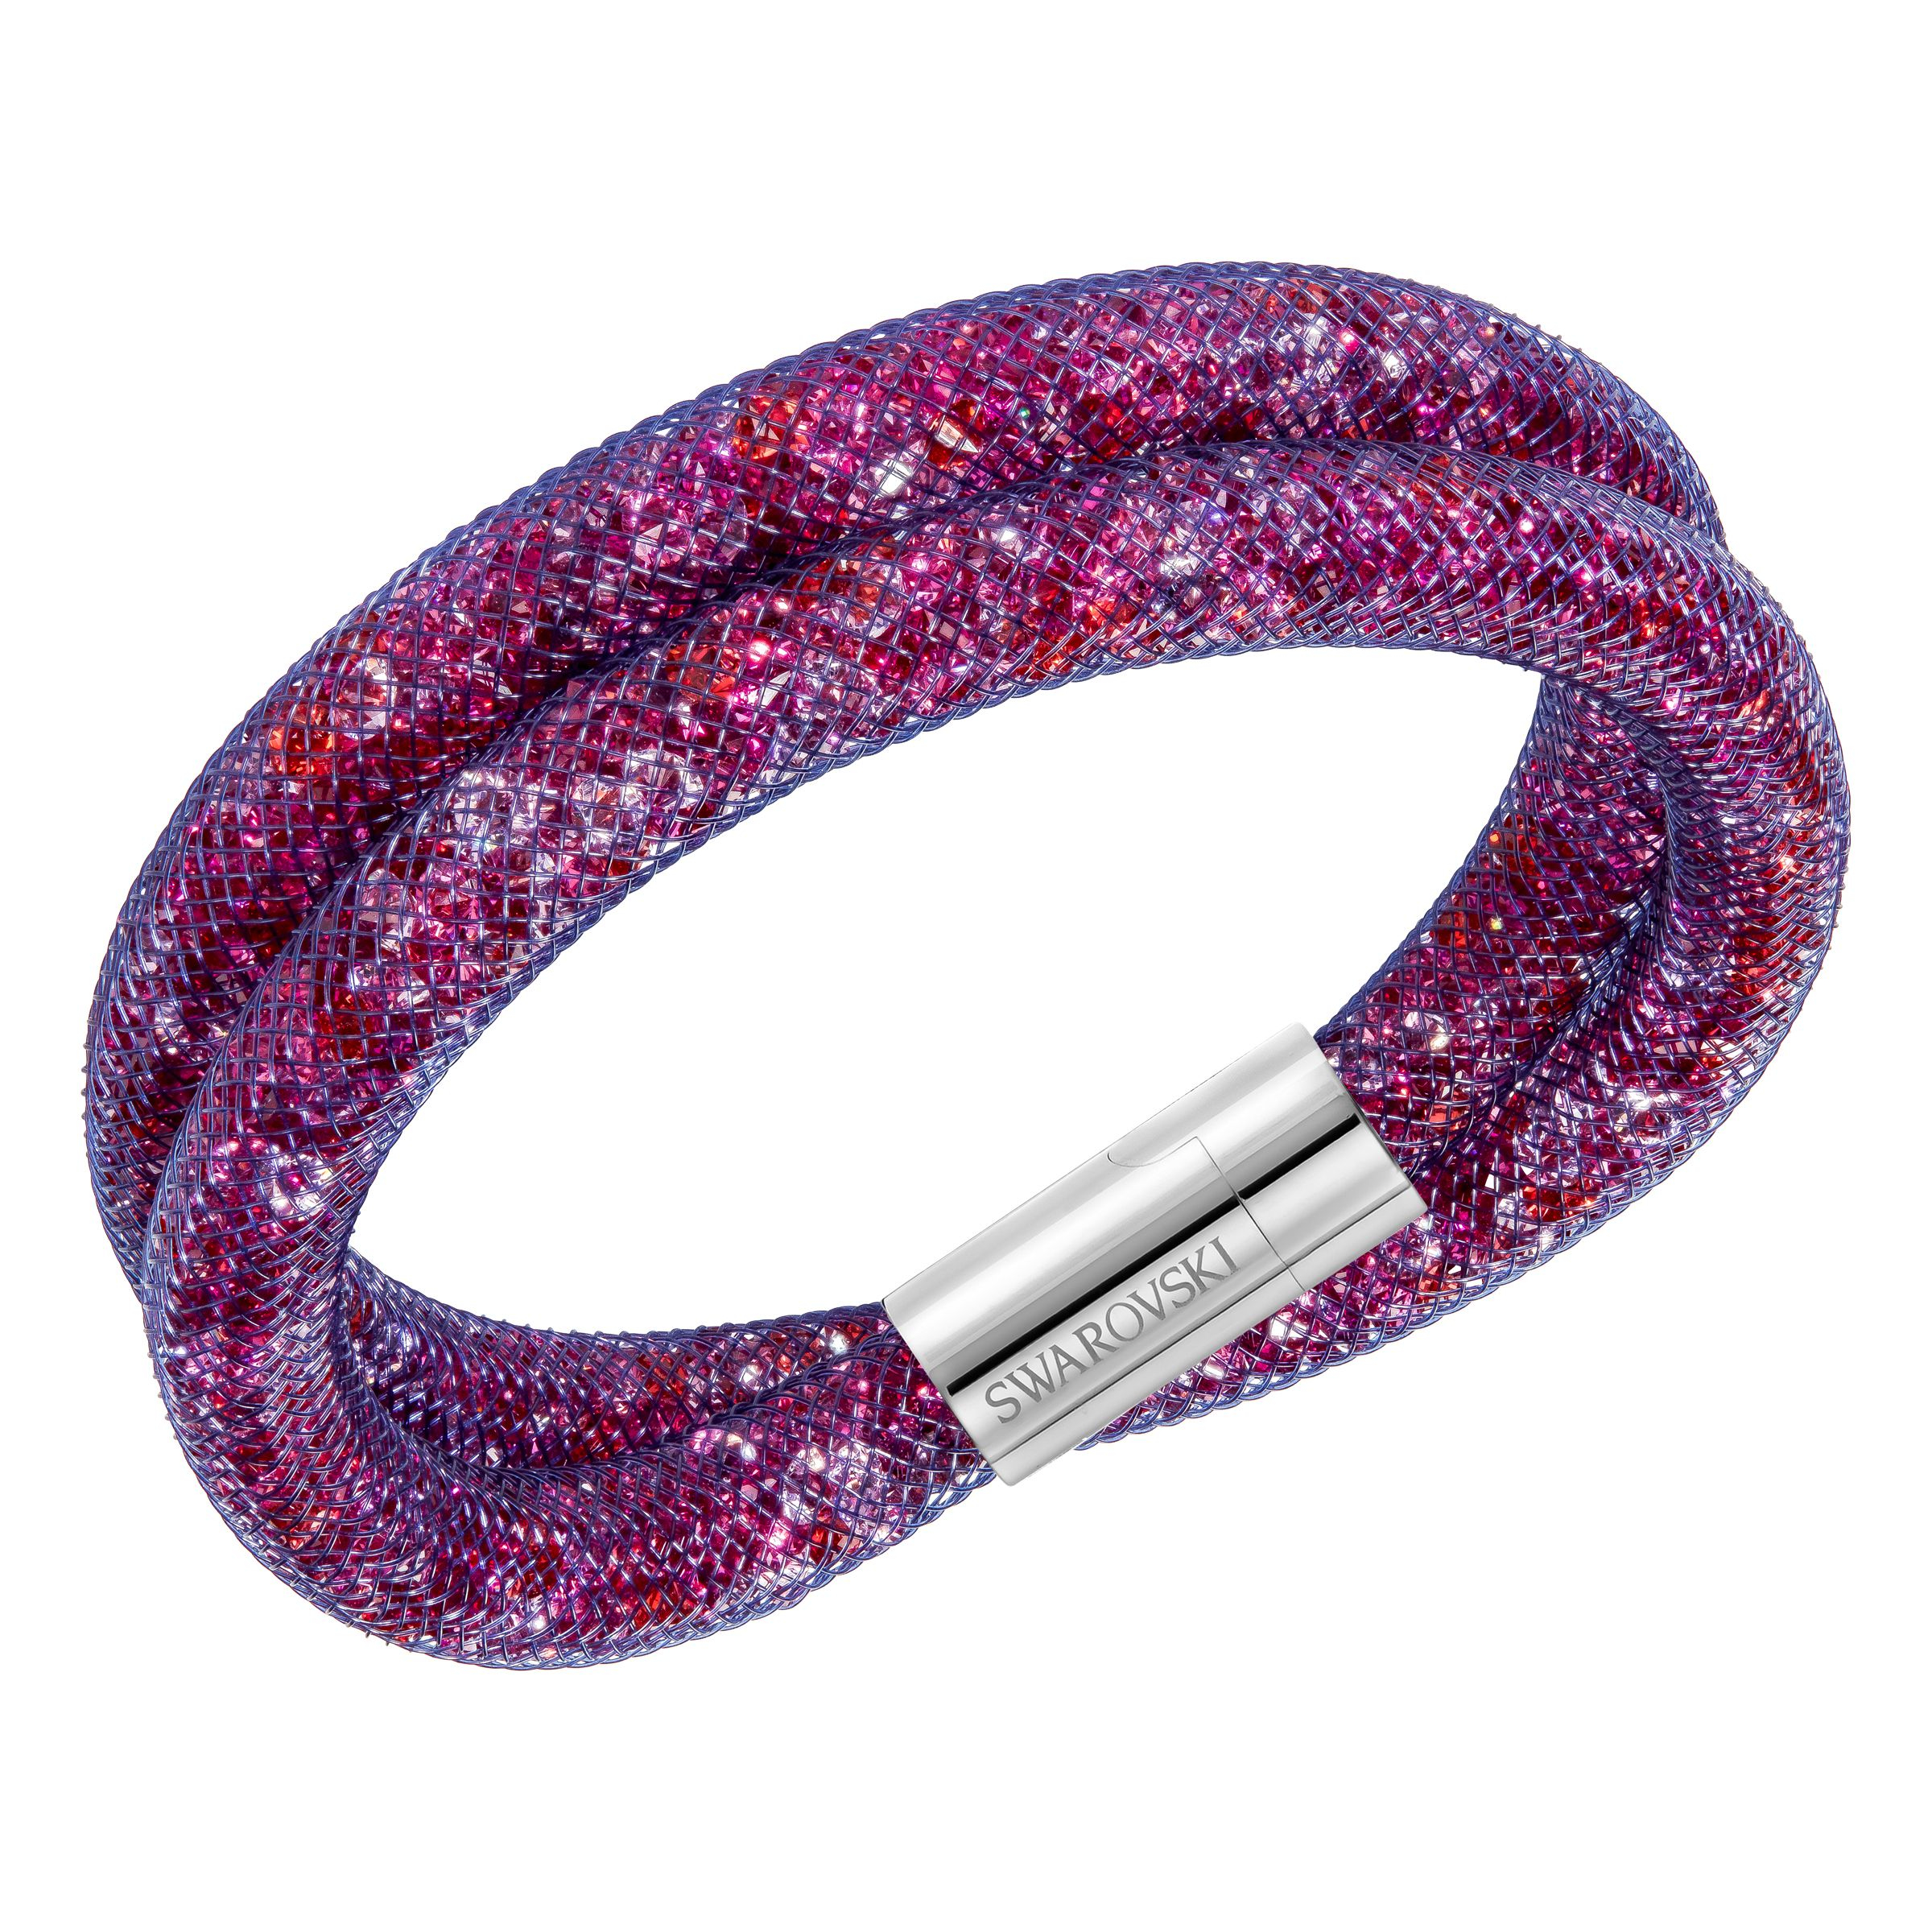 Swarovski Stardust Crystal Filled Mesh Wrap Bracelet in Purple | Lyst